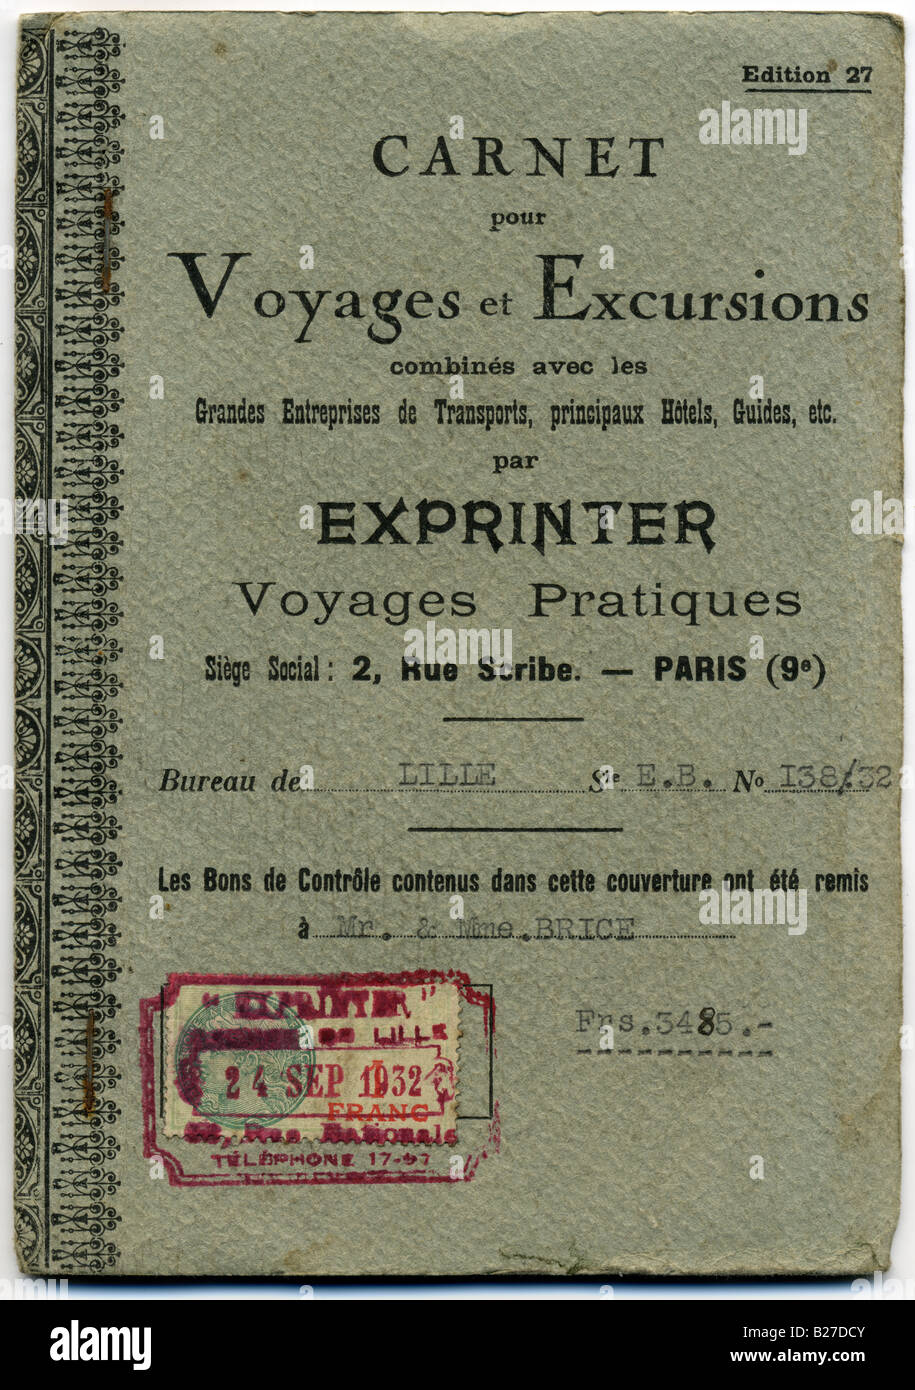 French Travel ticket de Lille con sello de fecha de 1932, en Lille, Francia, 1932 Foto de stock